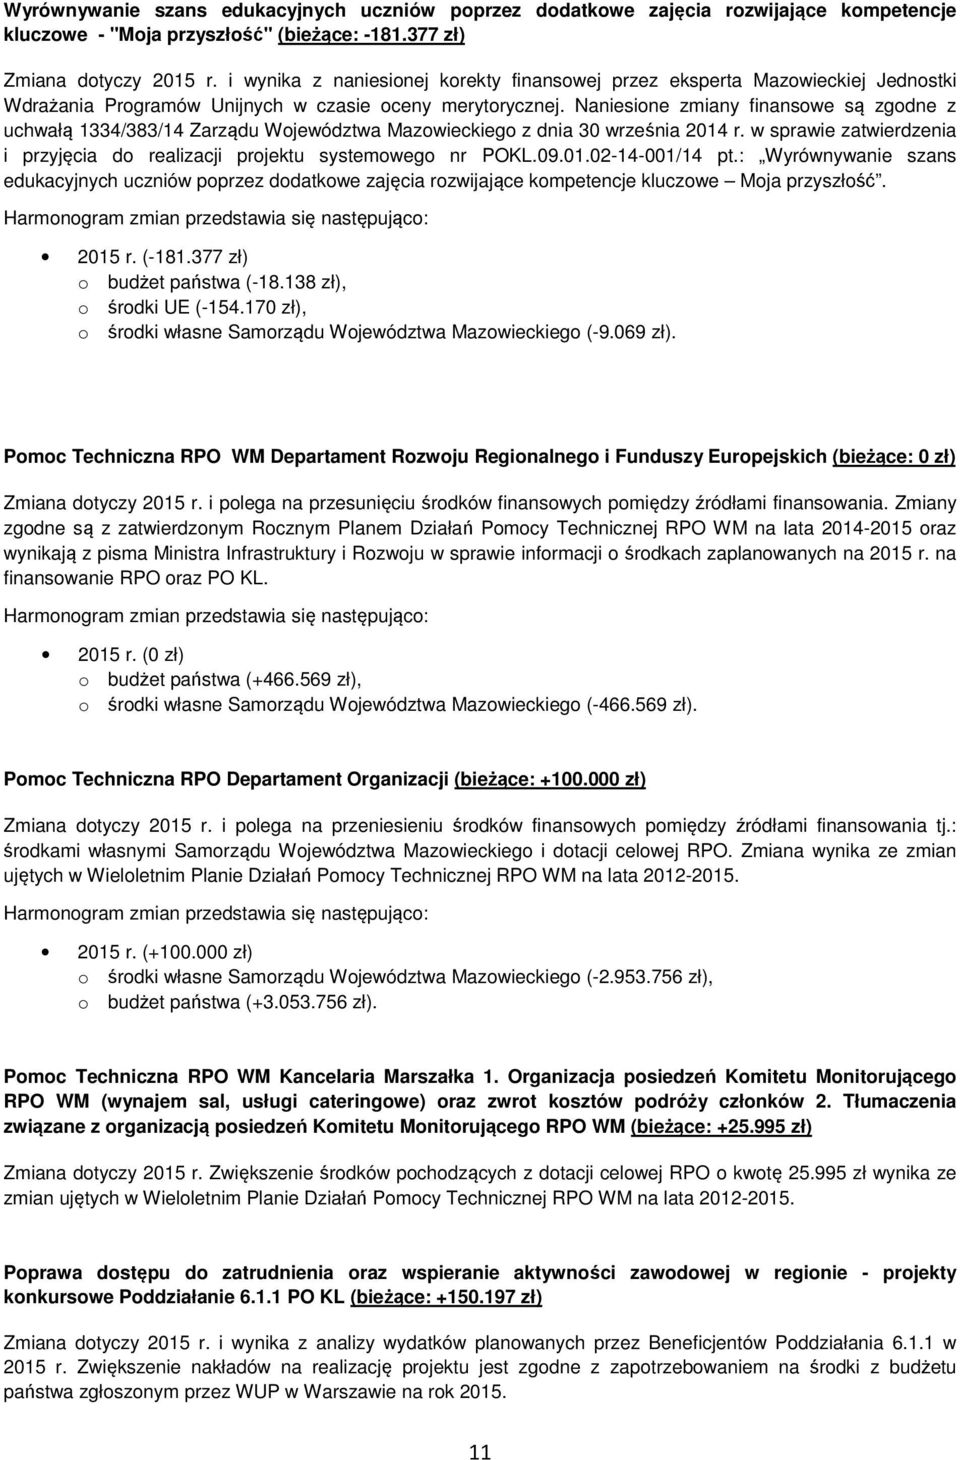 Naniesine zmiany finanswe są zgdne z uchwałą 1334/383/14 Zarządu Wjewództwa Mazwieckieg z dnia 30 września 2014 r. w sprawie zatwierdzenia i przyjęcia d realizacji prjektu systemweg nr POKL.09.01.02-14-001/14 pt.